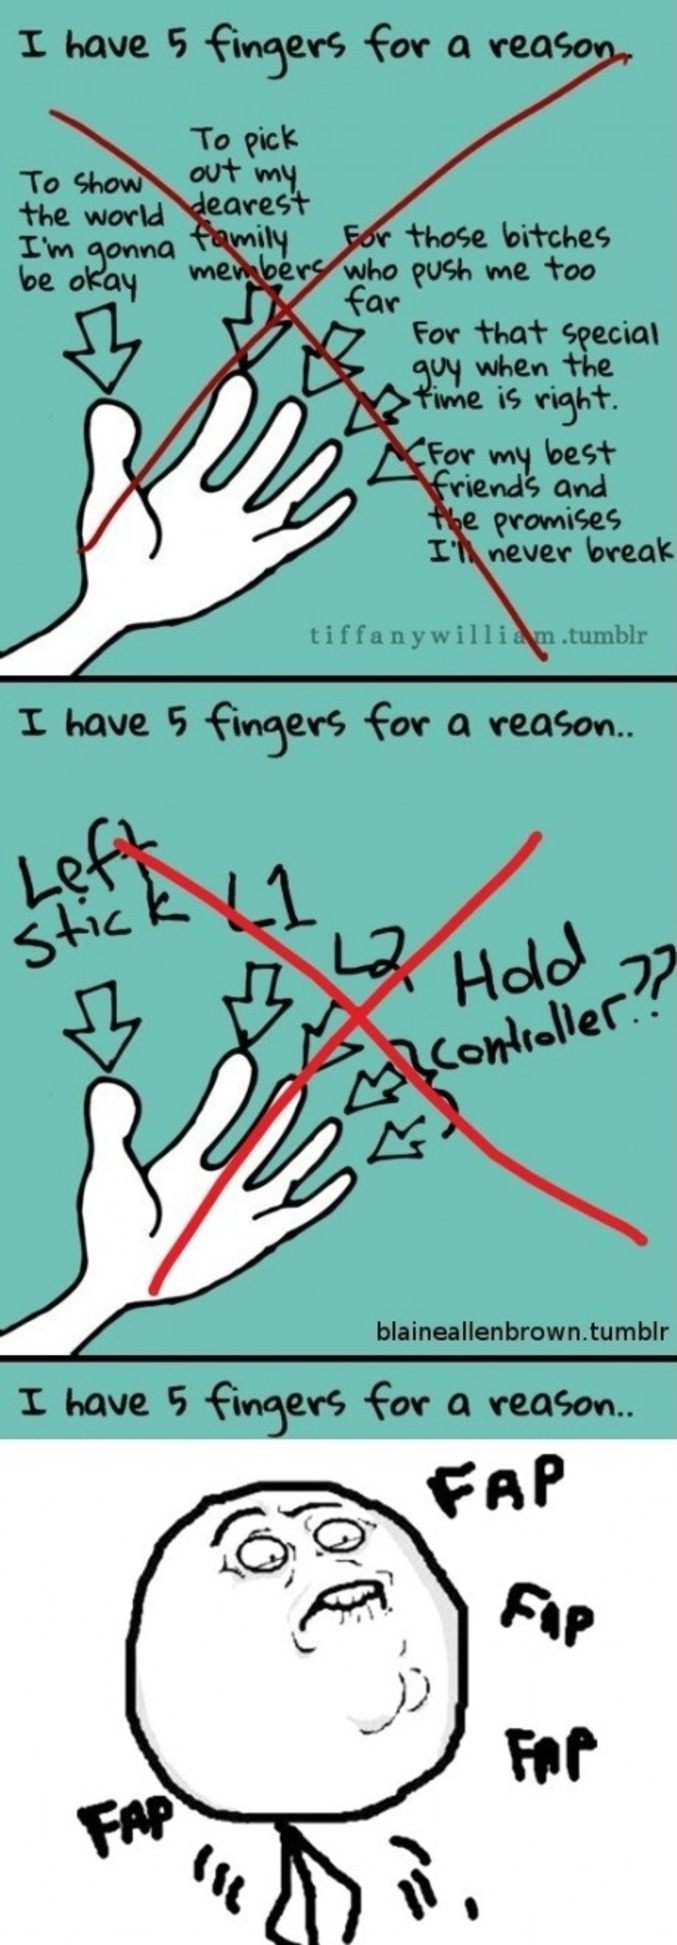 La raison pour laquelle nous avons cinq doigts.